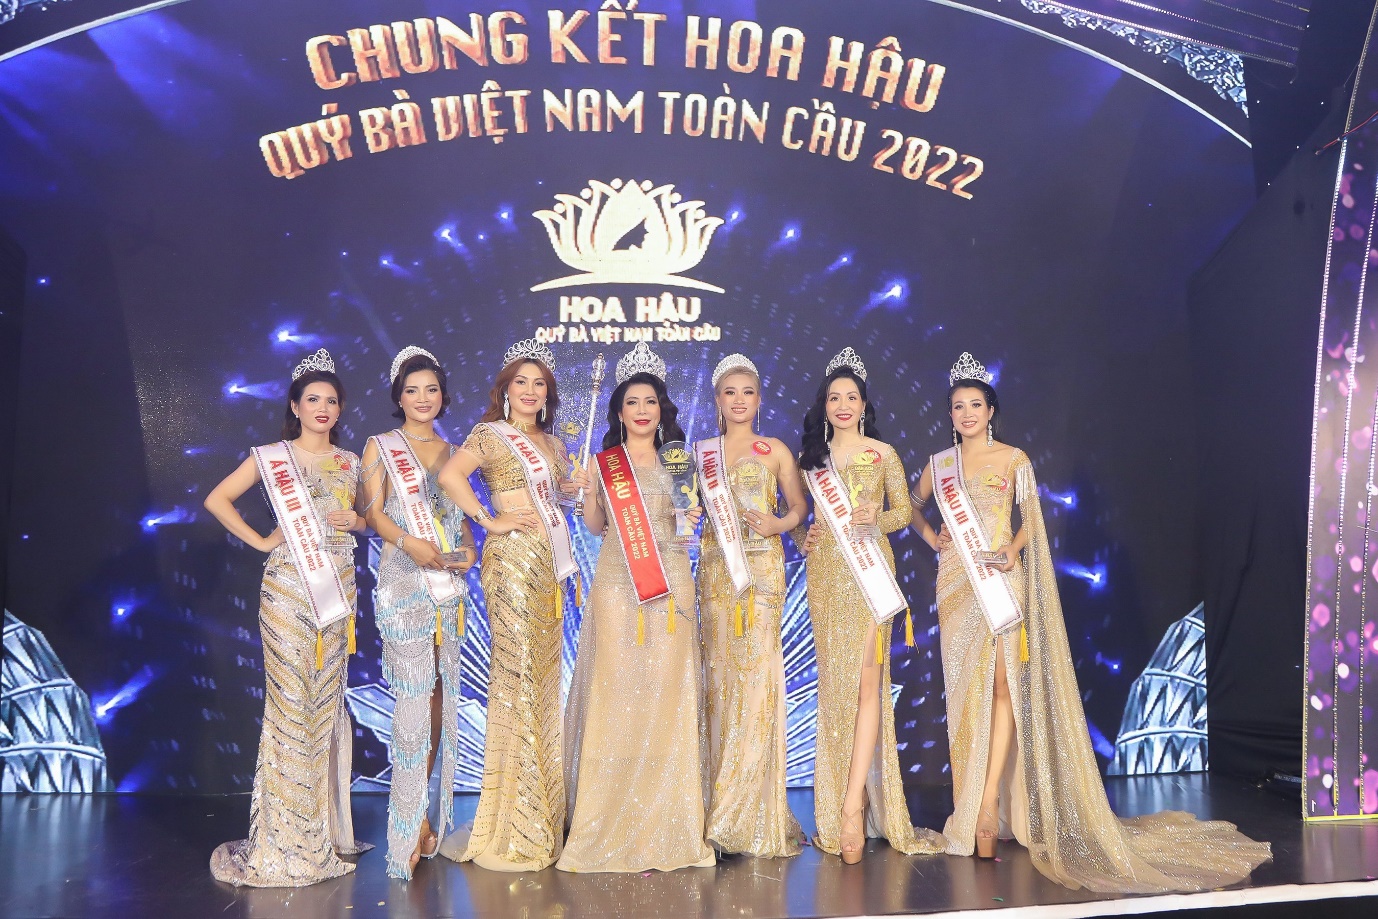 Lộ diện Hoa hậu quý bà Việt Nam toàn cầu 2022 - 1